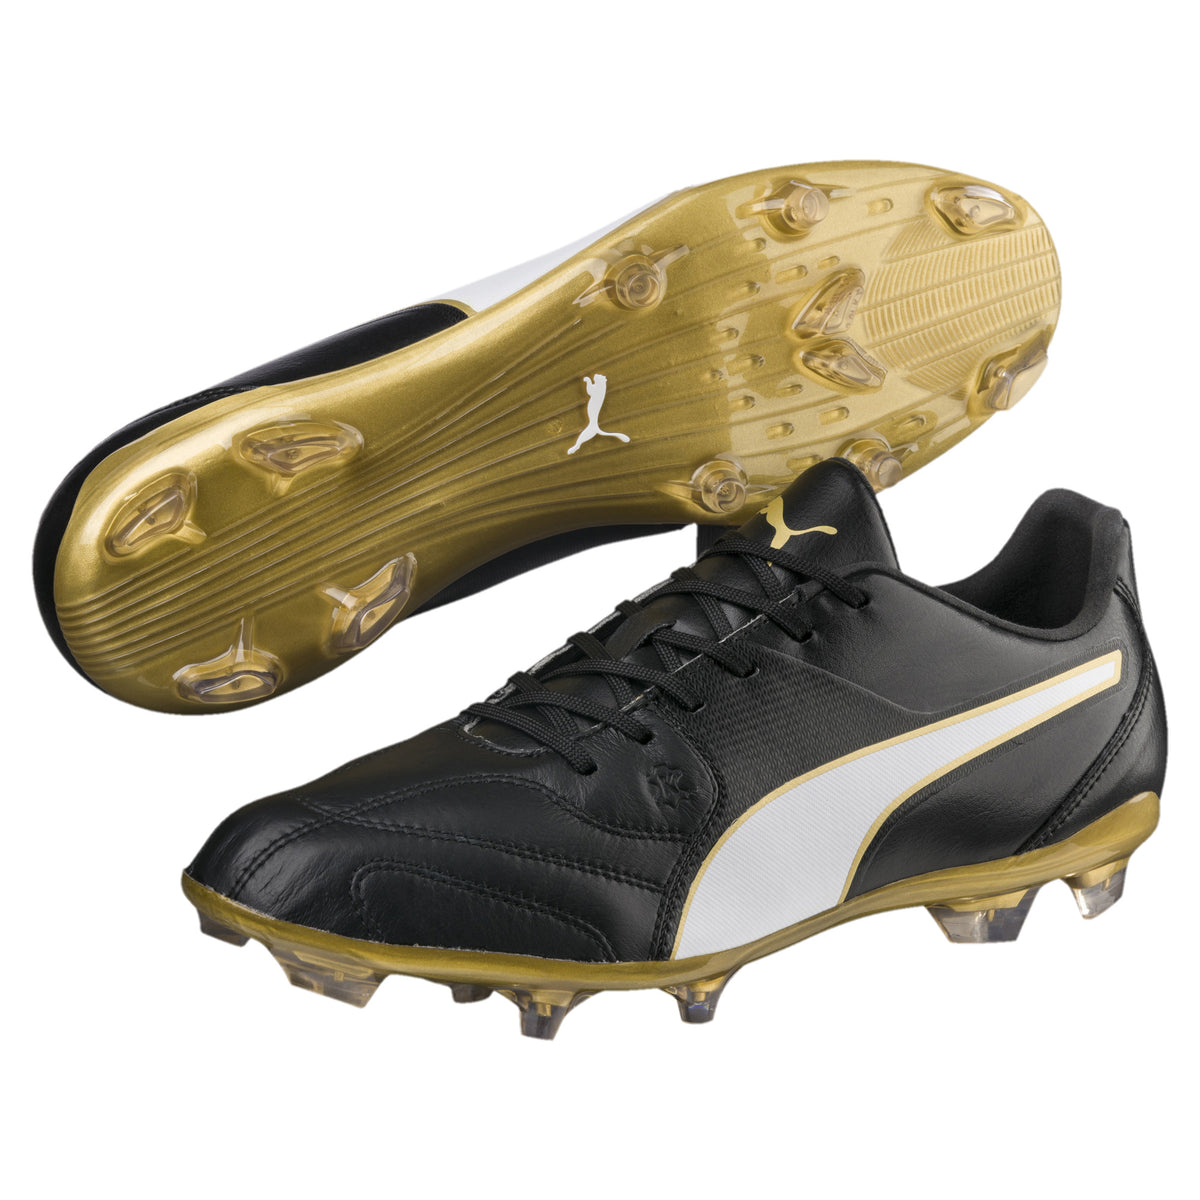 Puma Capitano II FG chaussures de soccer